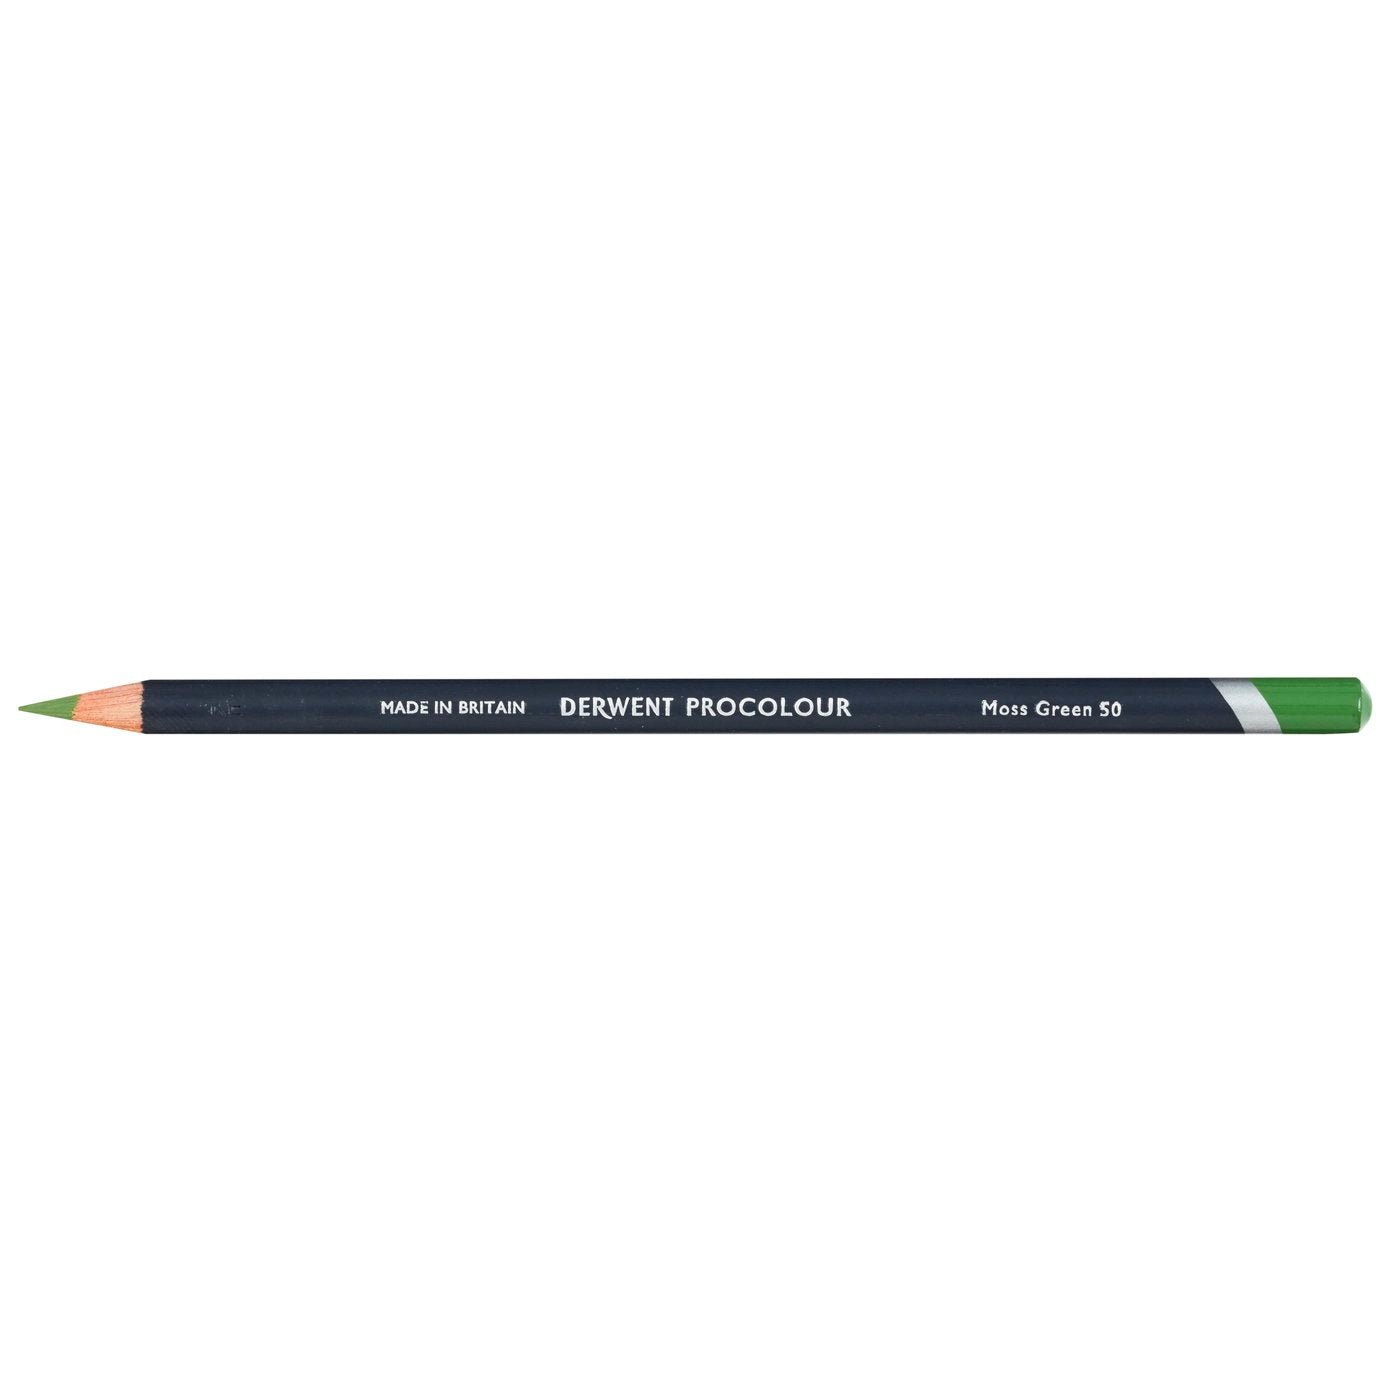 Derwent Procolour Pencil Moss Green 50 - theartshop.com.au